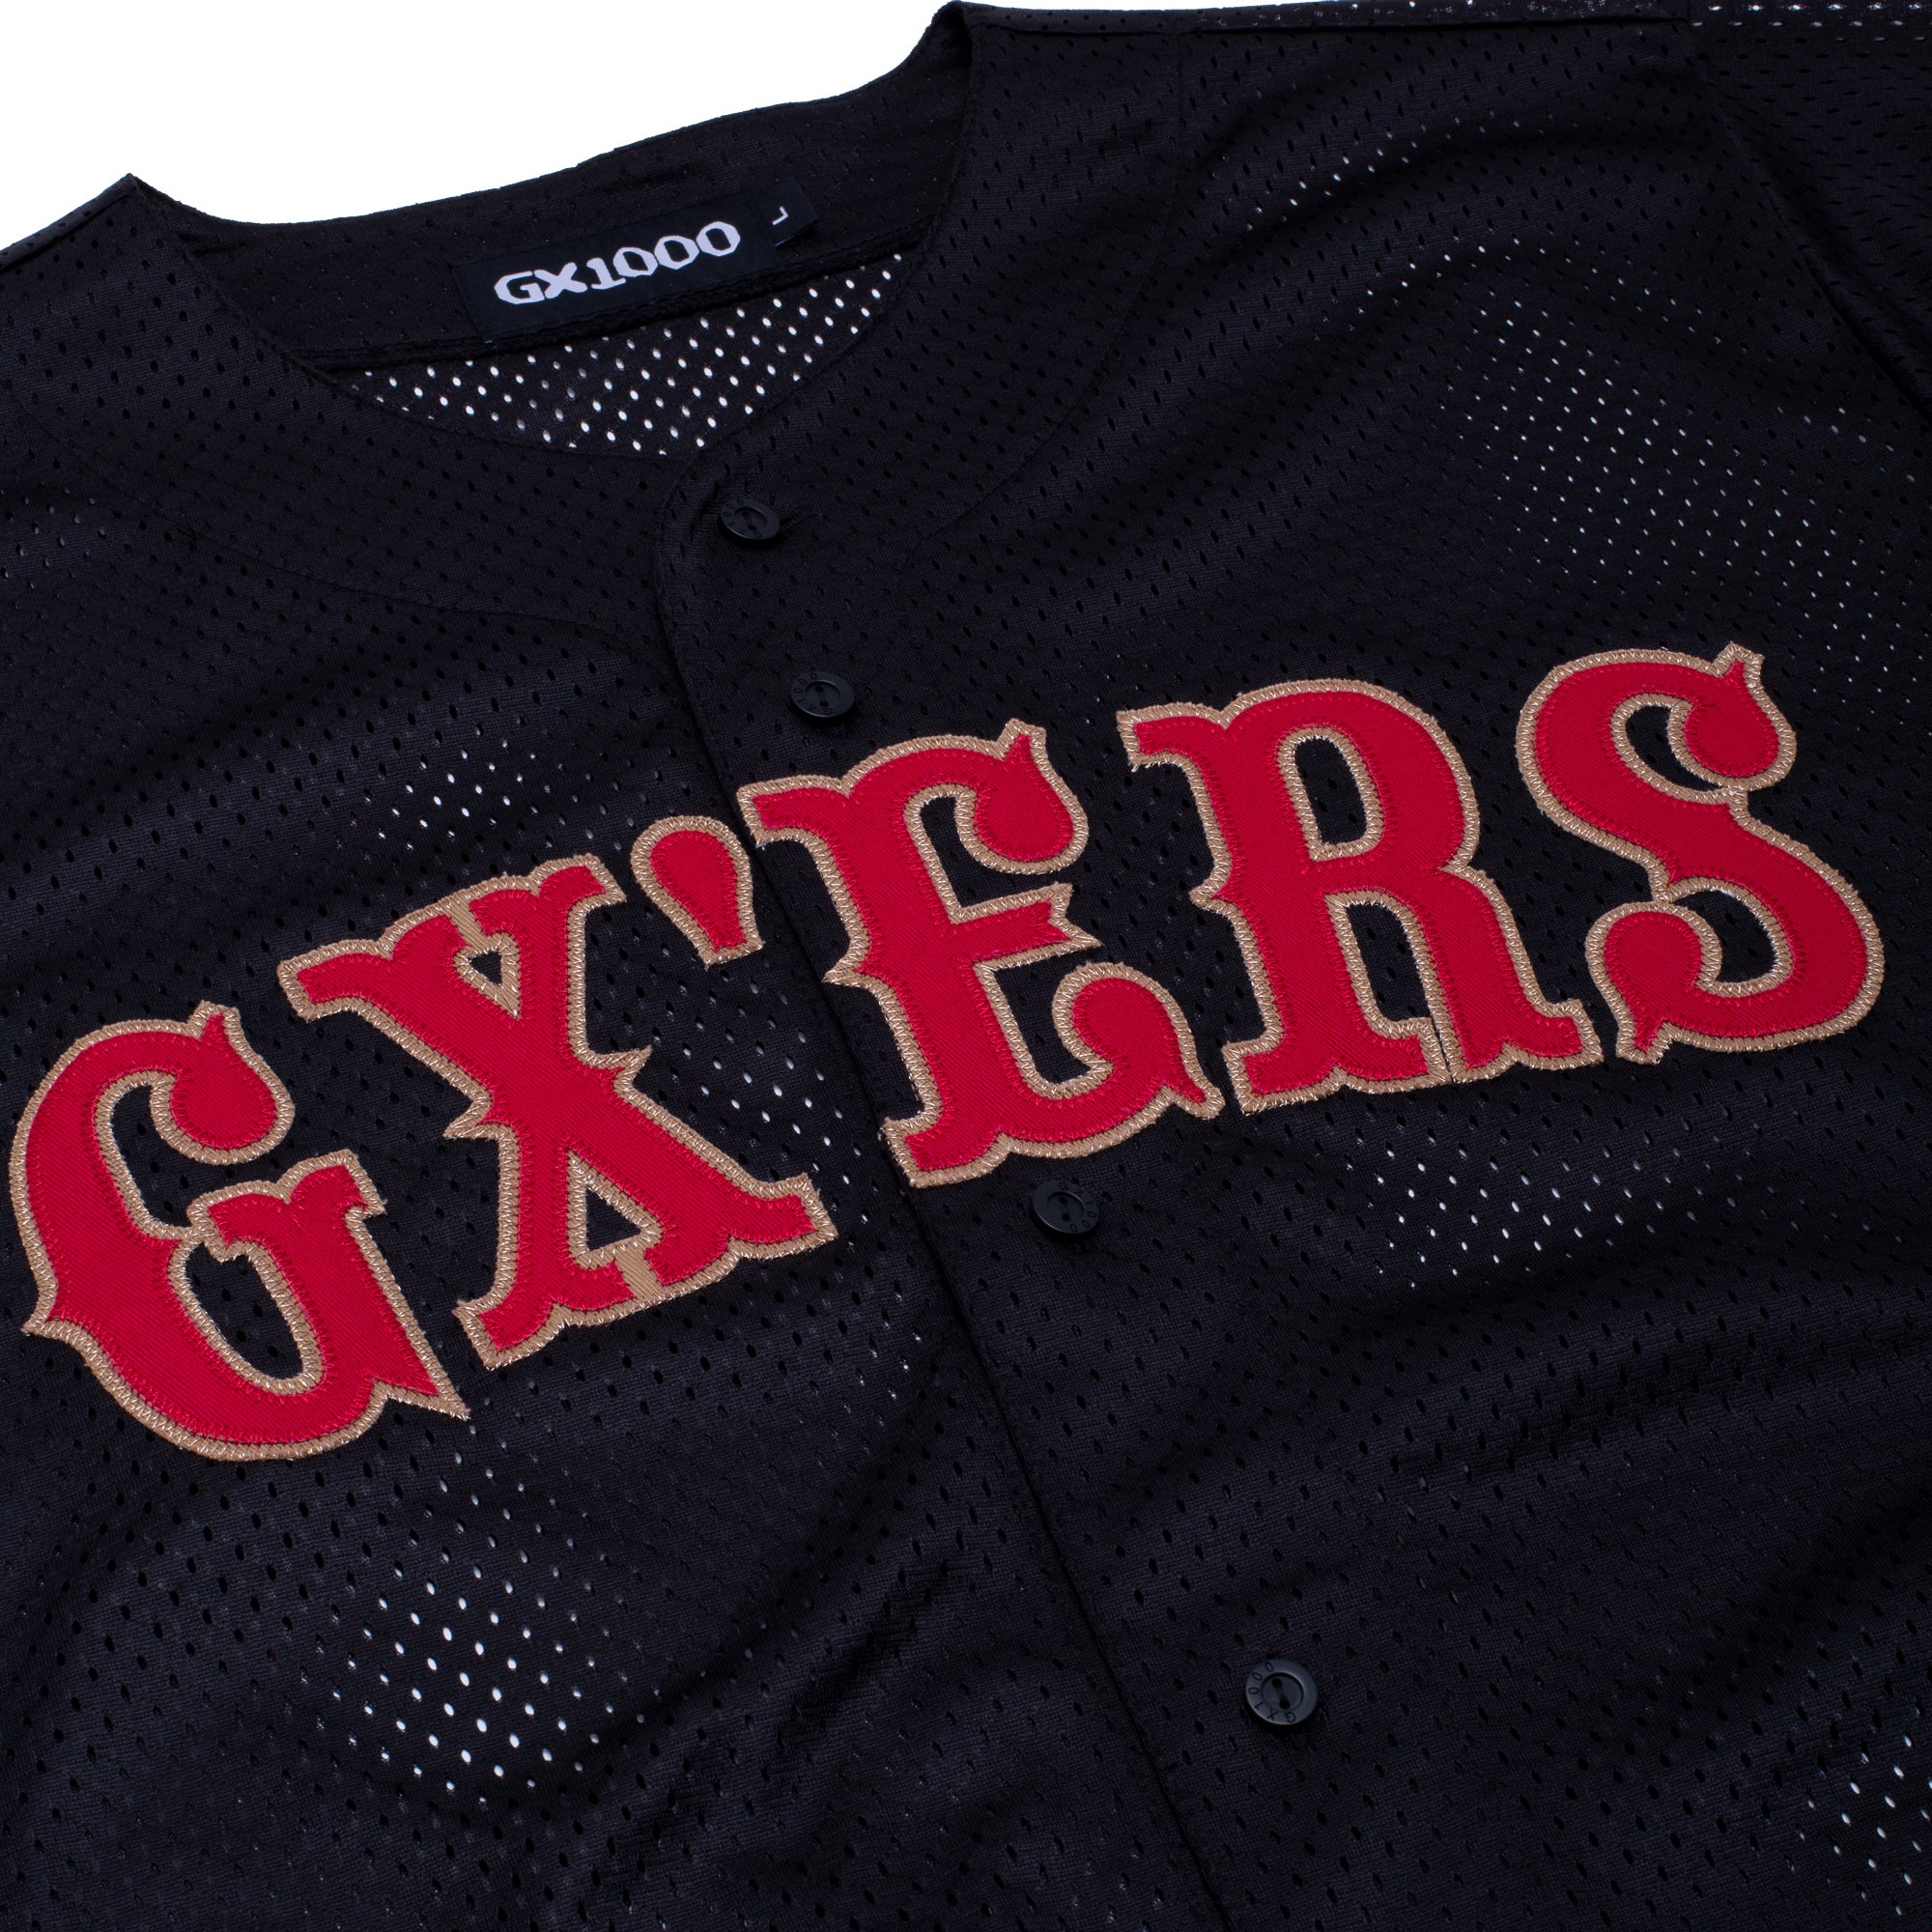 GX1000 - Baseball Jersey ”Black”